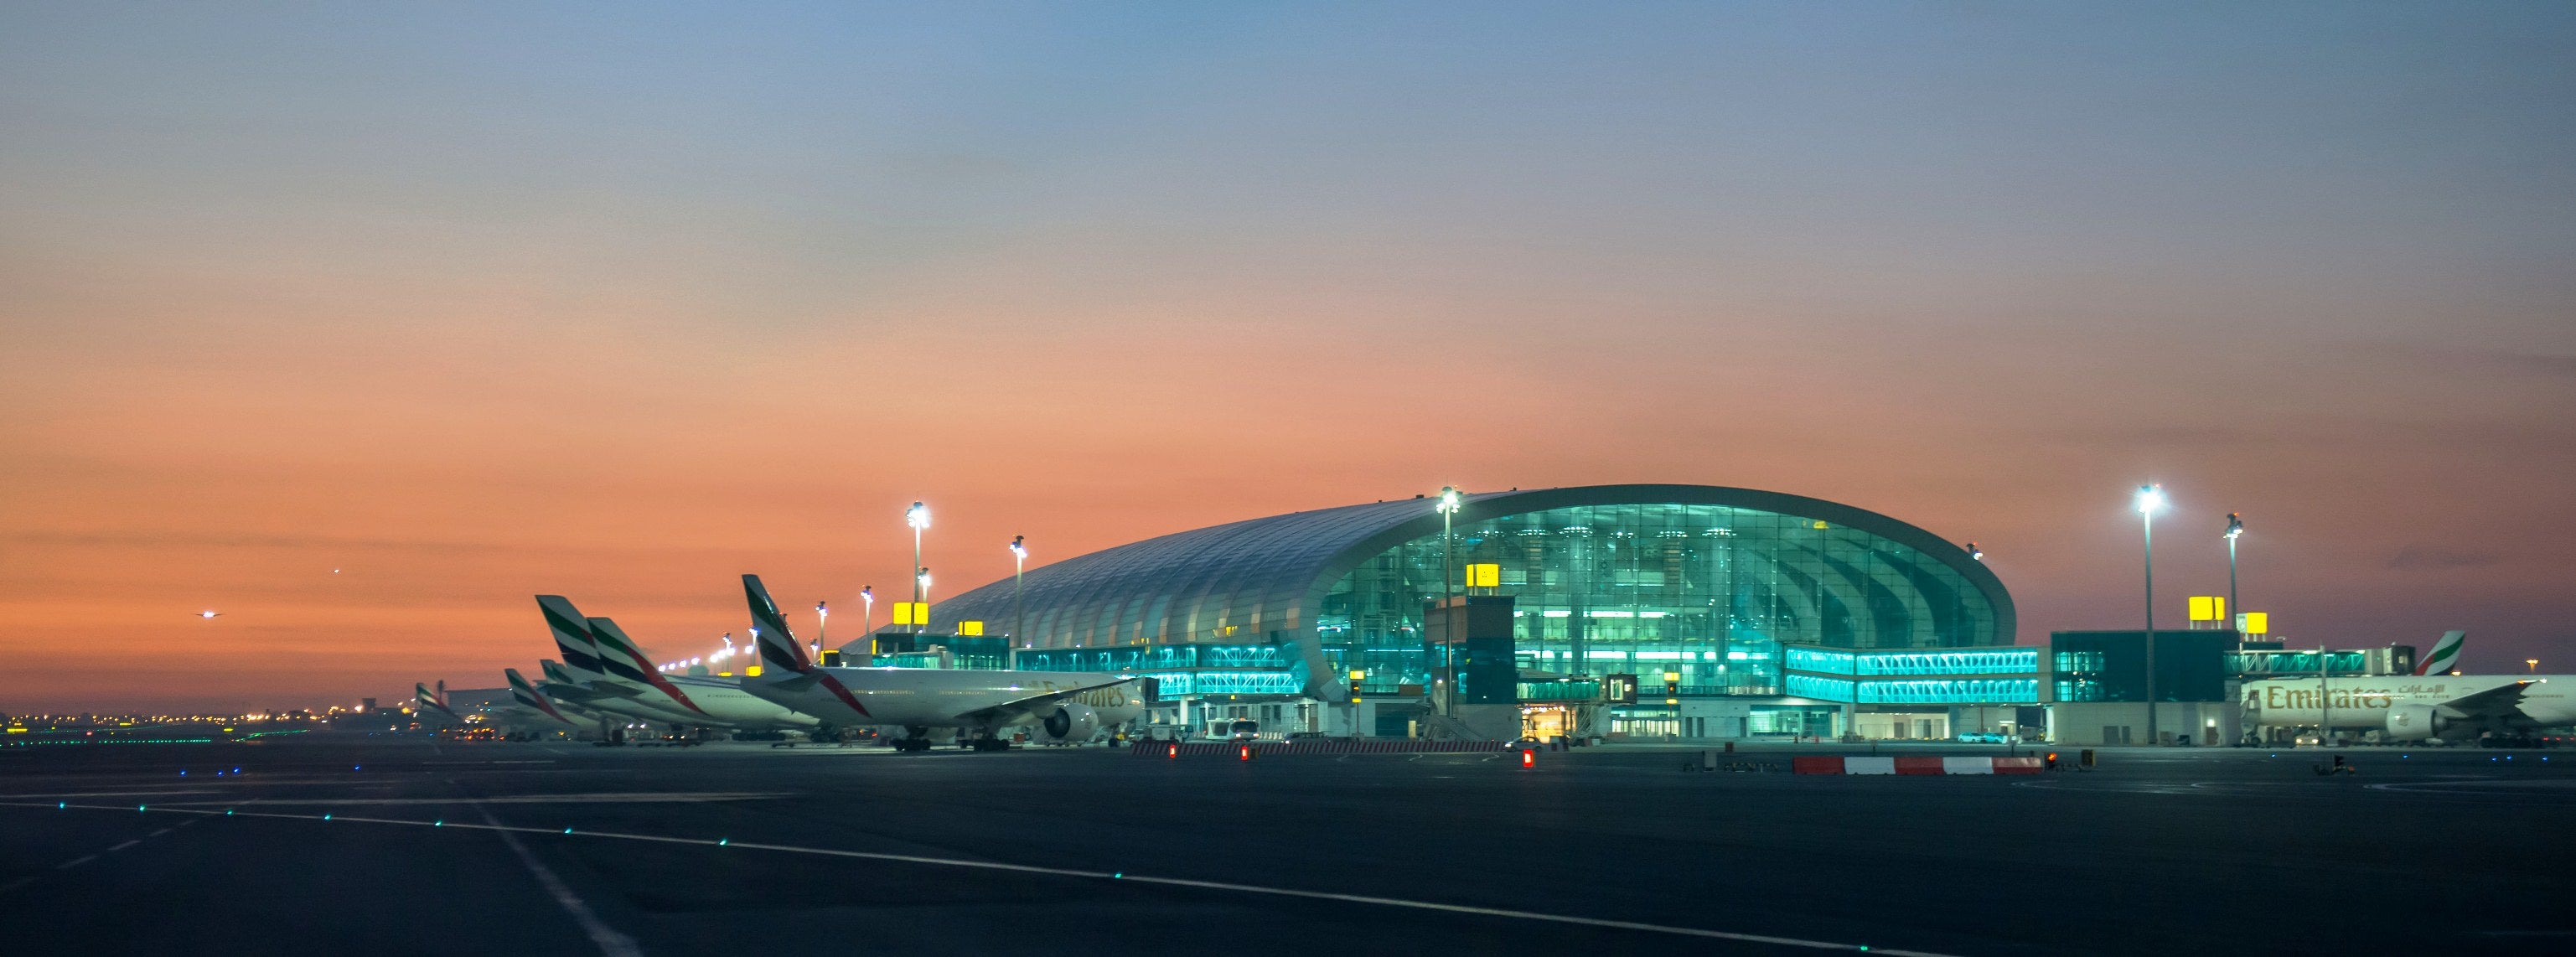 Dubai airport concourse A